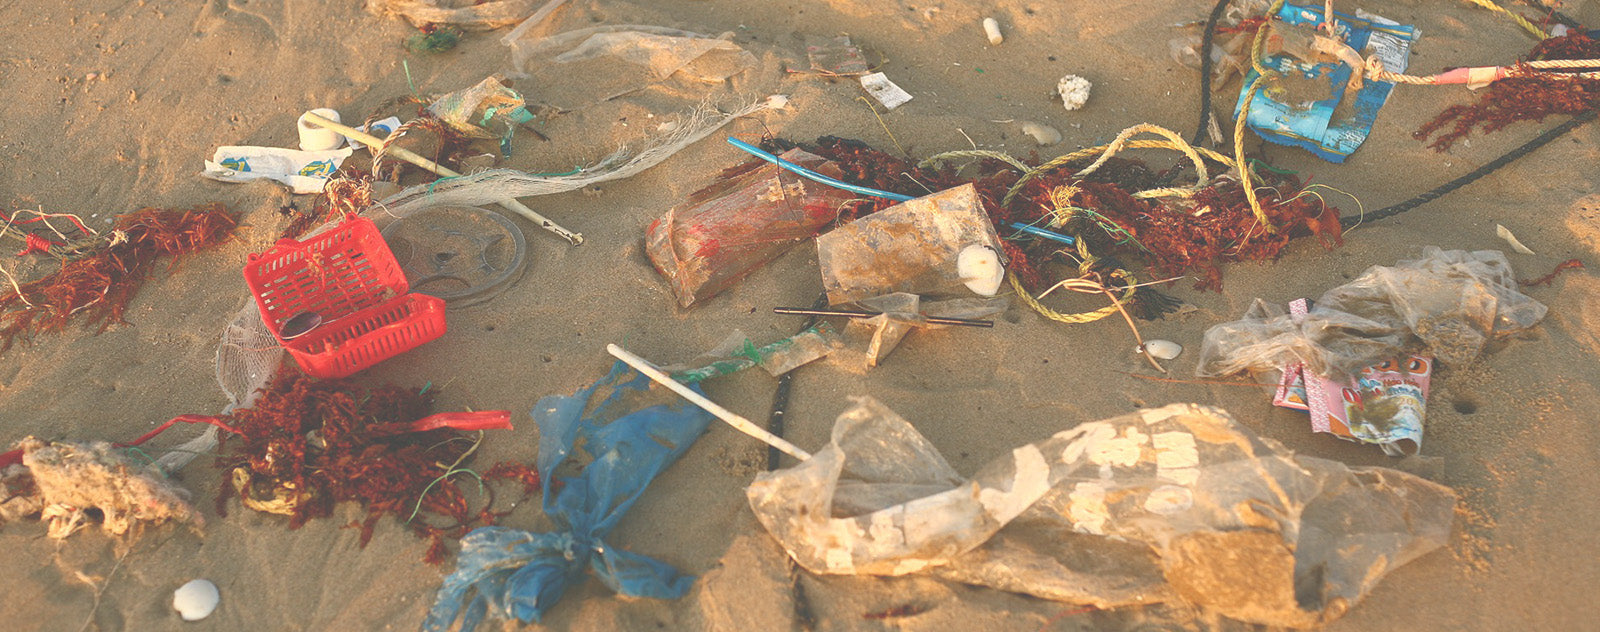 Production de plastique et pollution des océans